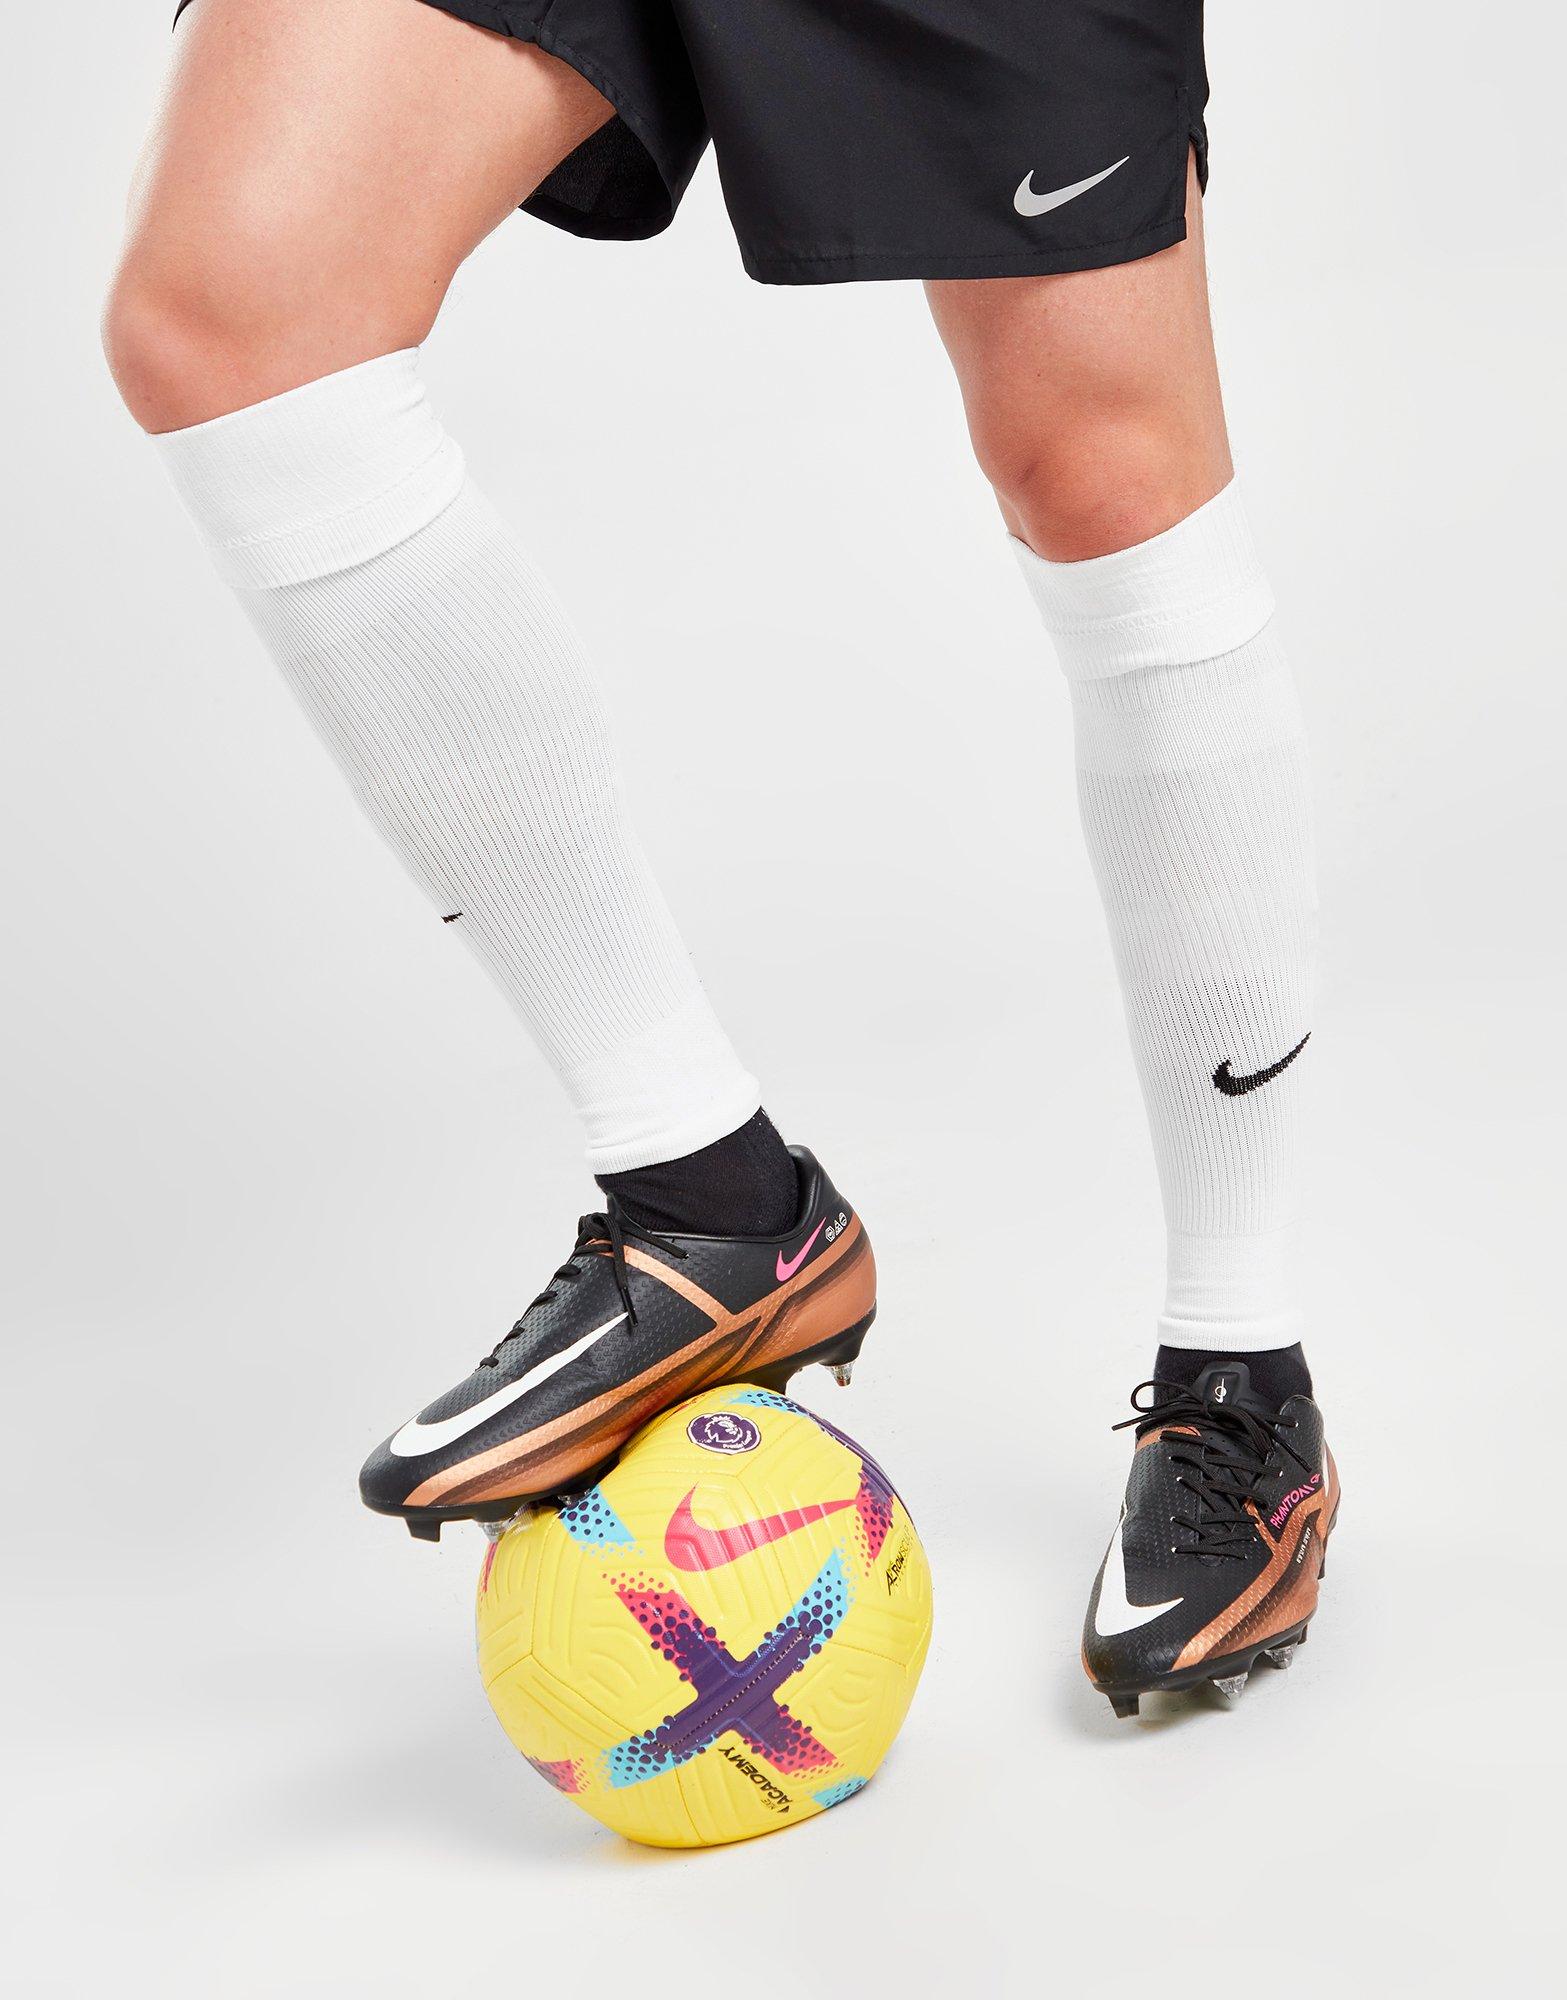 Sabroso Ennegrecer monitor Compra Nike medias de fútbol sin pie Squad en Blanco